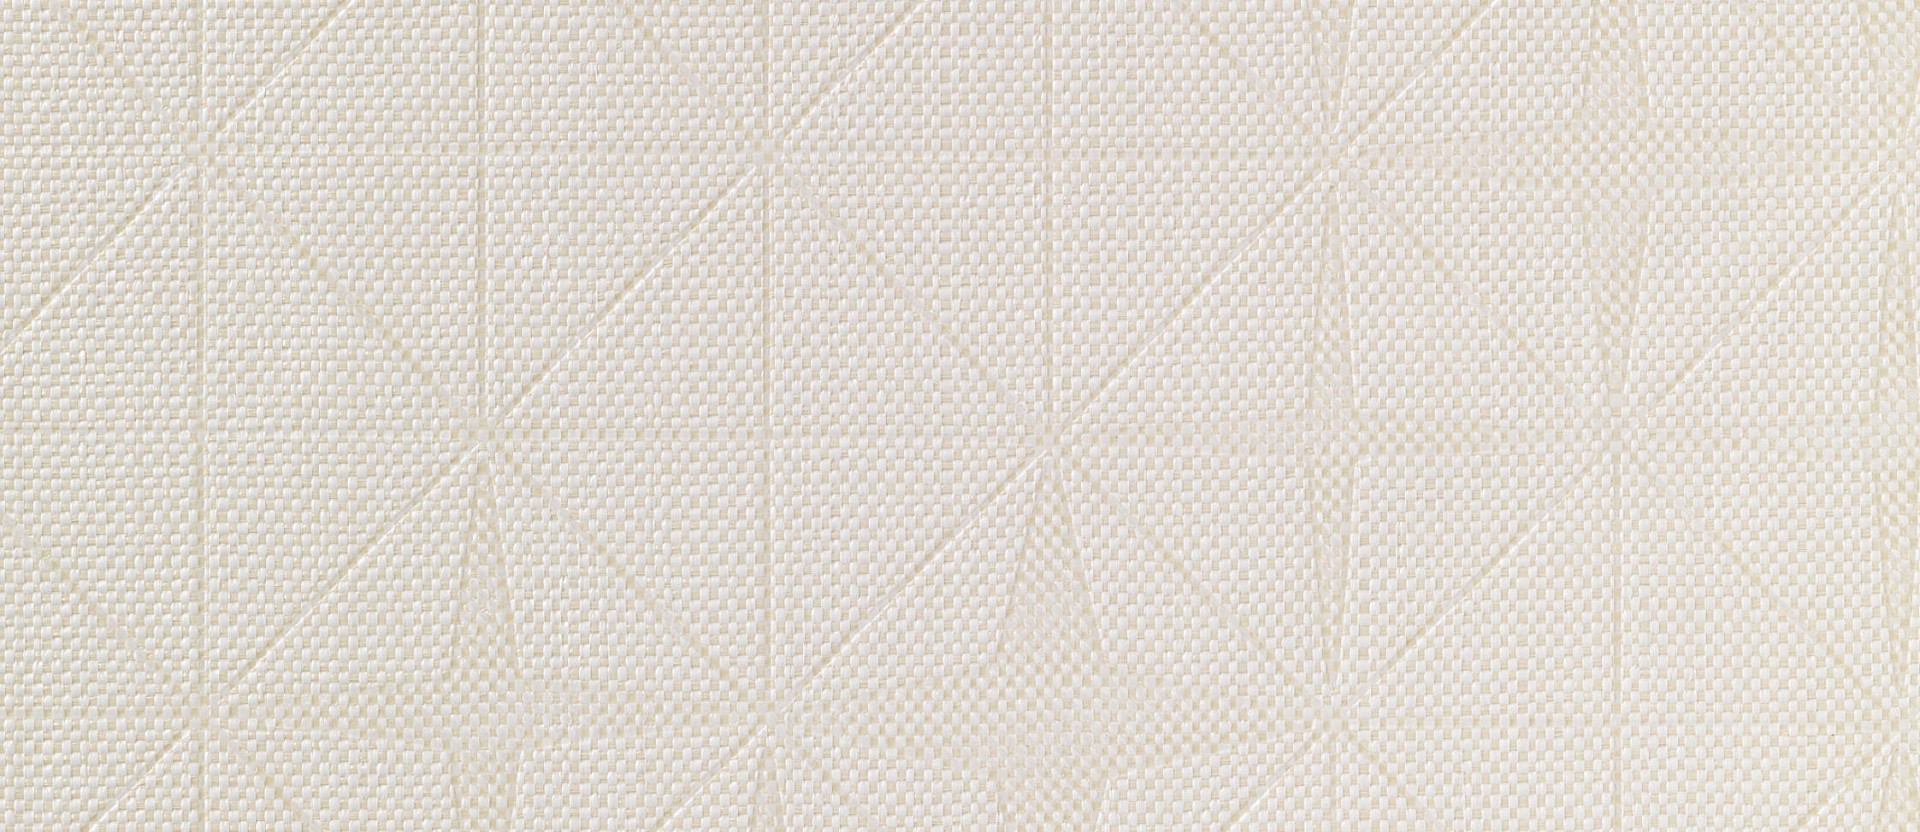 Текстильные обои Vescom Fragment Emboss 2541.04